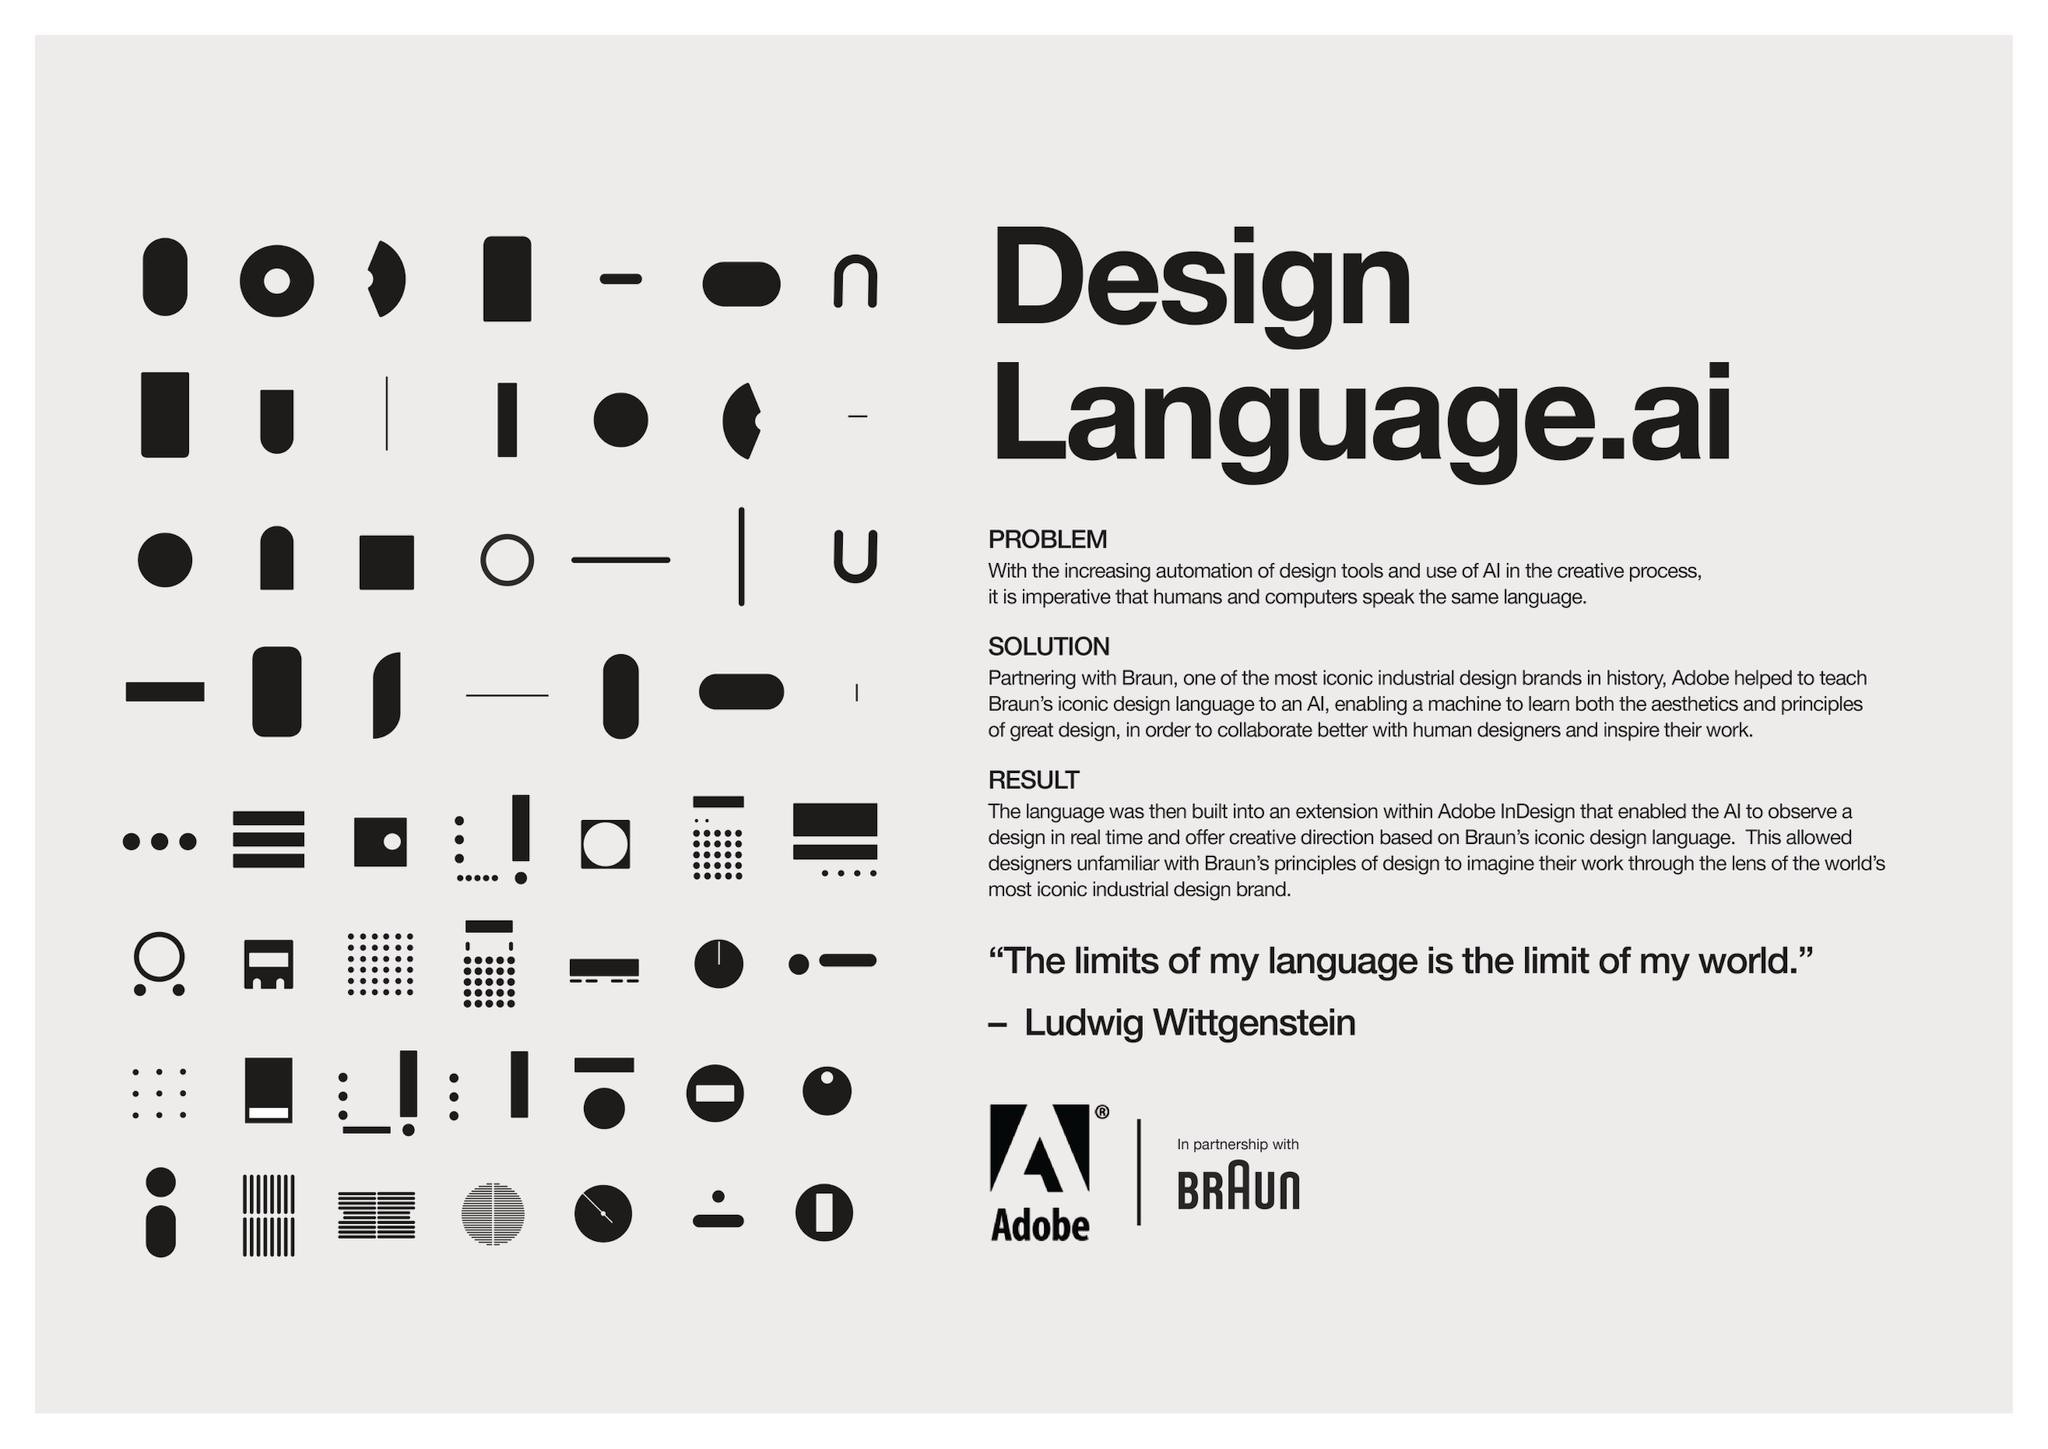 DesignLanguage.ai